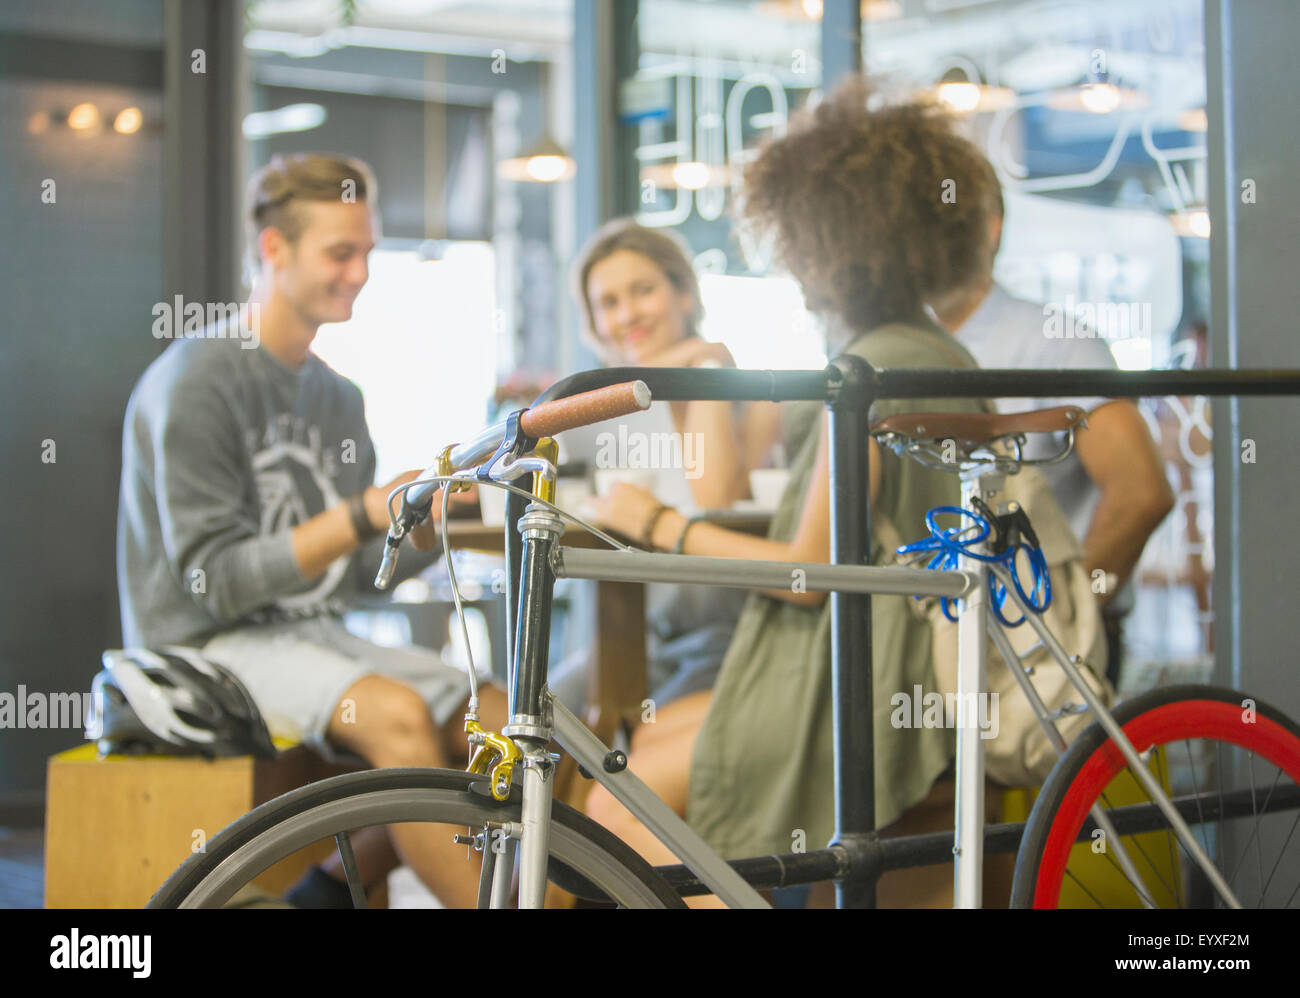 Freunde im Café hinter dem Fahrrad hängen Stockfoto